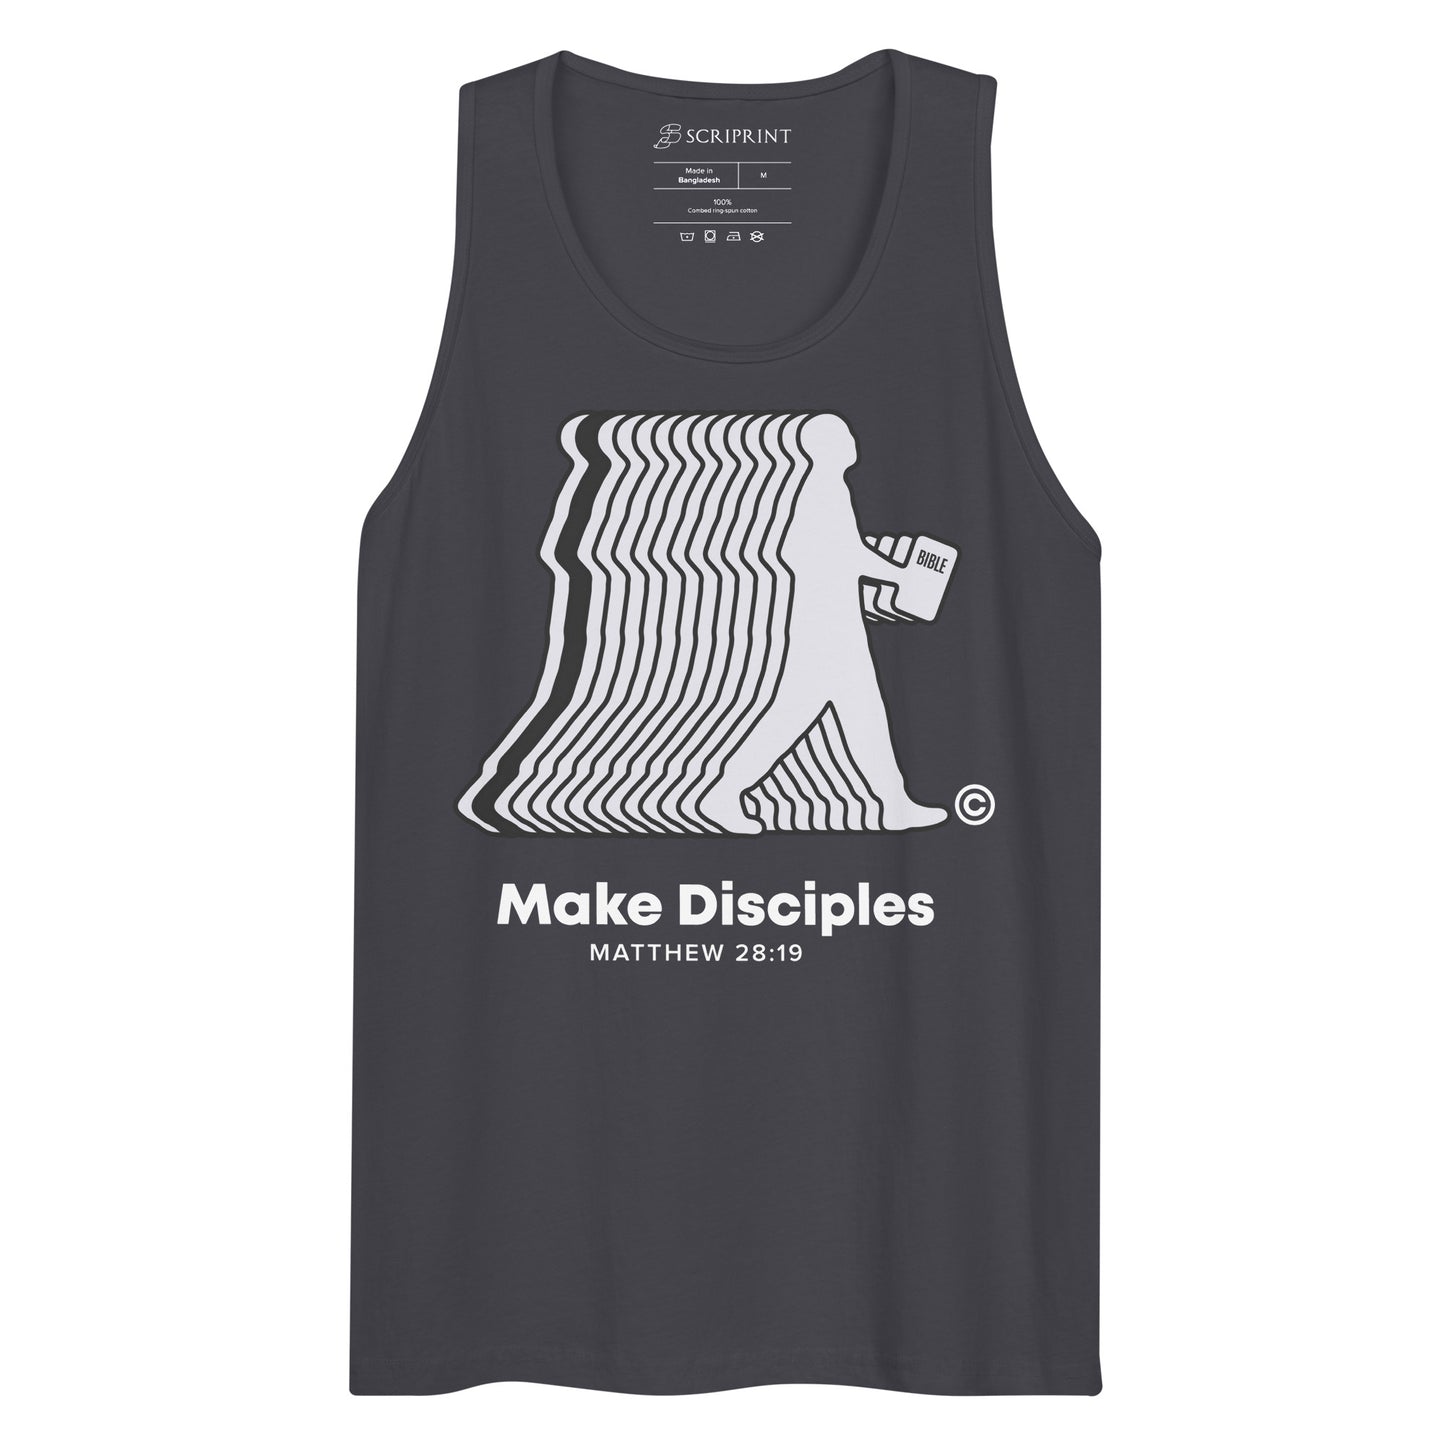 Make Disciples Men’s Dark-Colored Premium Tank Top